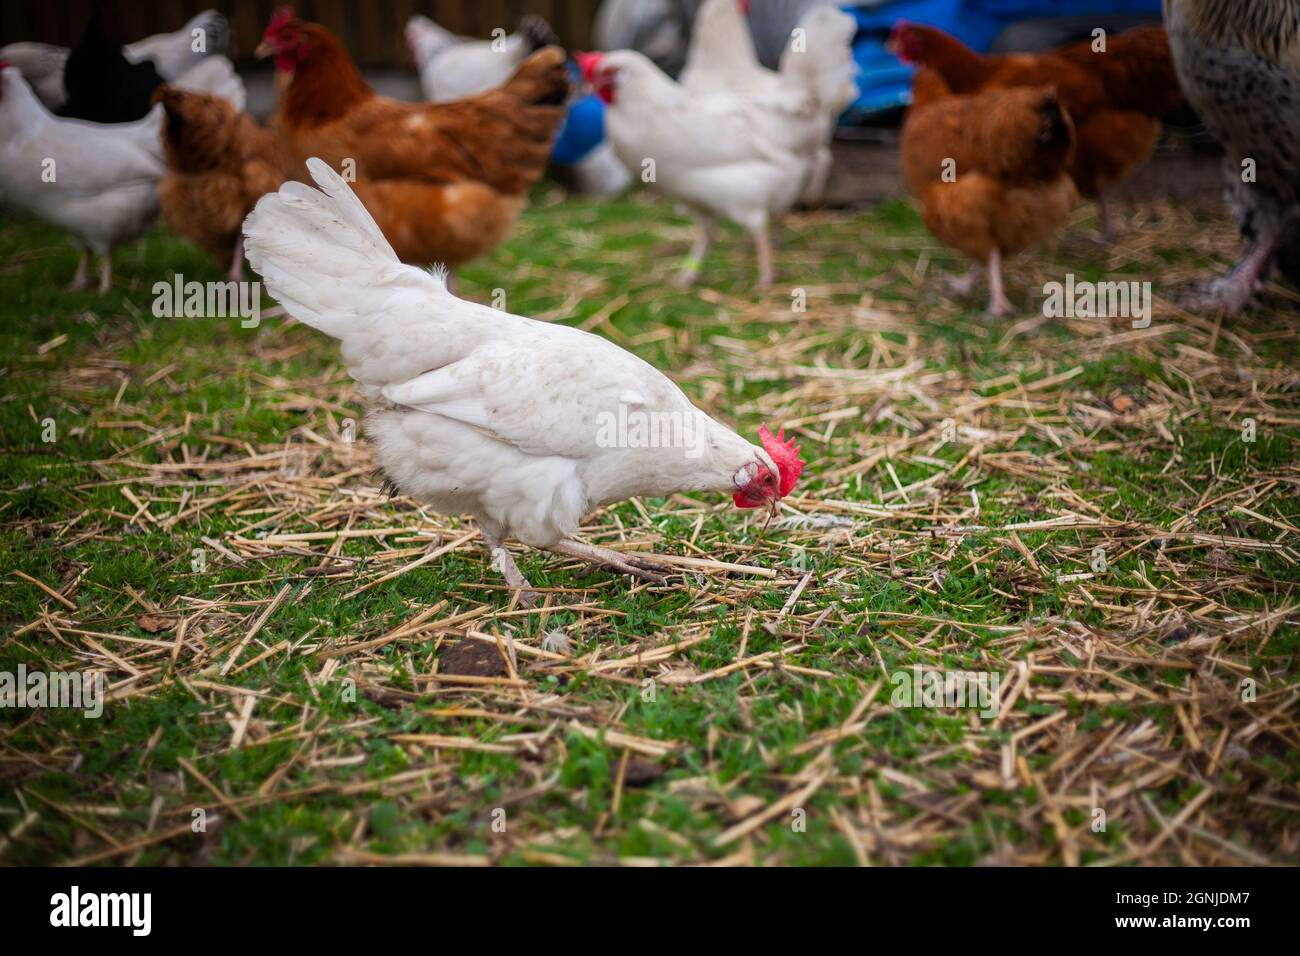 Hühnerfütterung am Boden | Foto schließen von einem weißen Huhn auf einem Bauernhof, das etwas im Gras mit anderen Hühnern im Hintergrund sieht Stockfoto